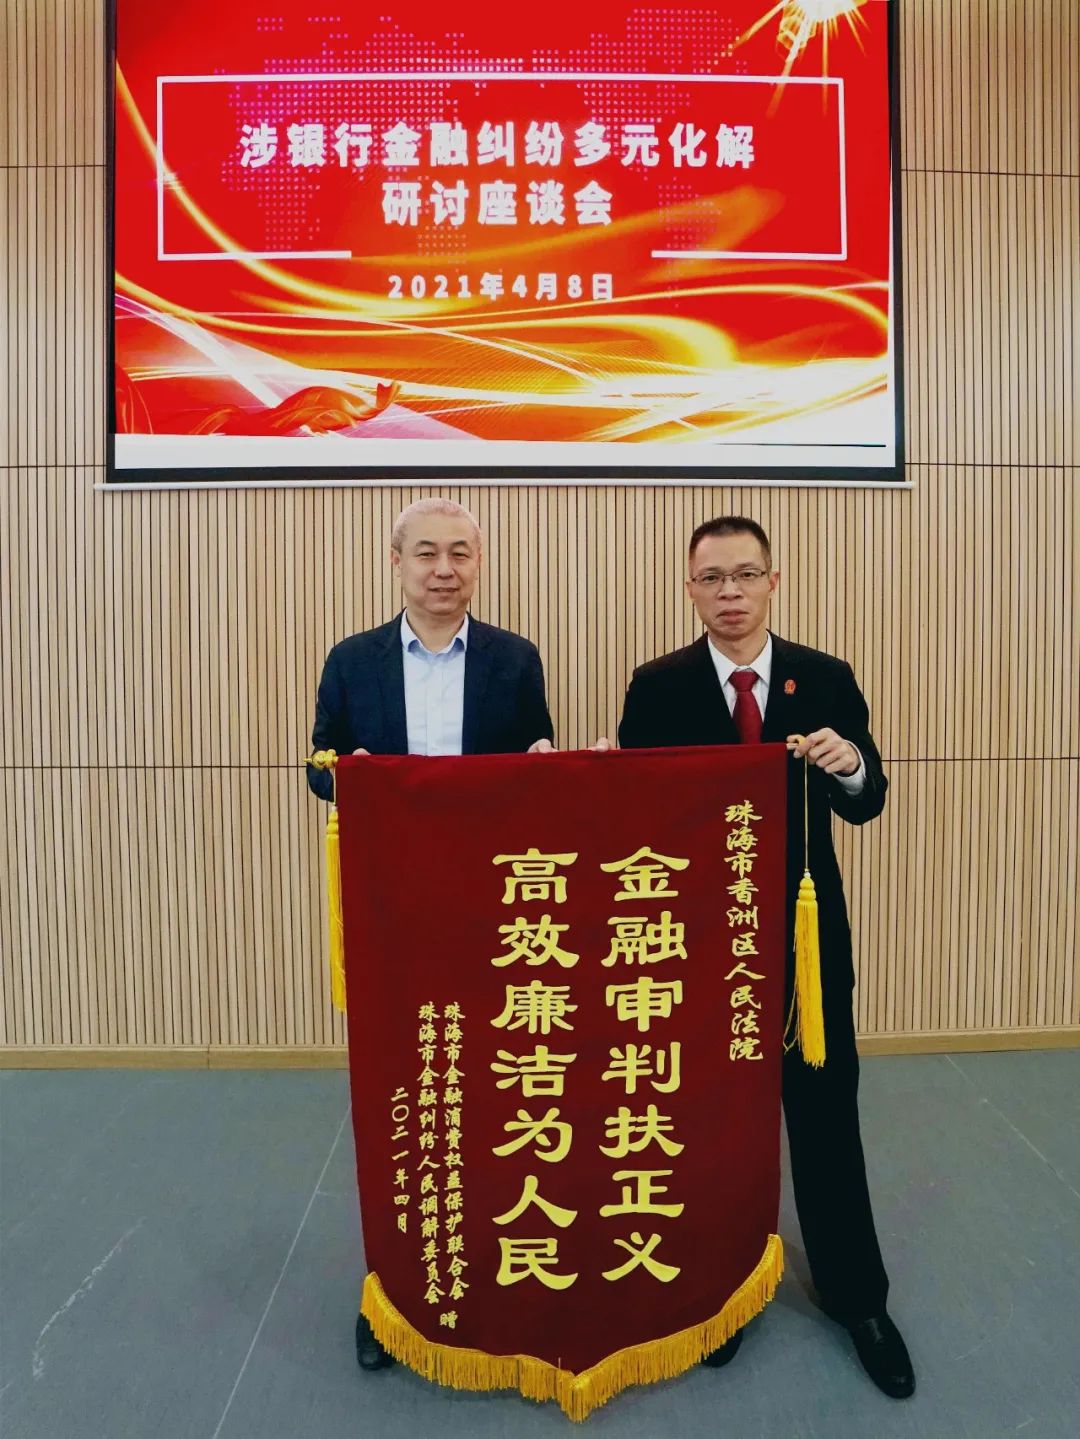 珠海联合会会长单位代表、中国工商银行珠海分行纪委书记邓建辉向香洲法院赠送锦旗